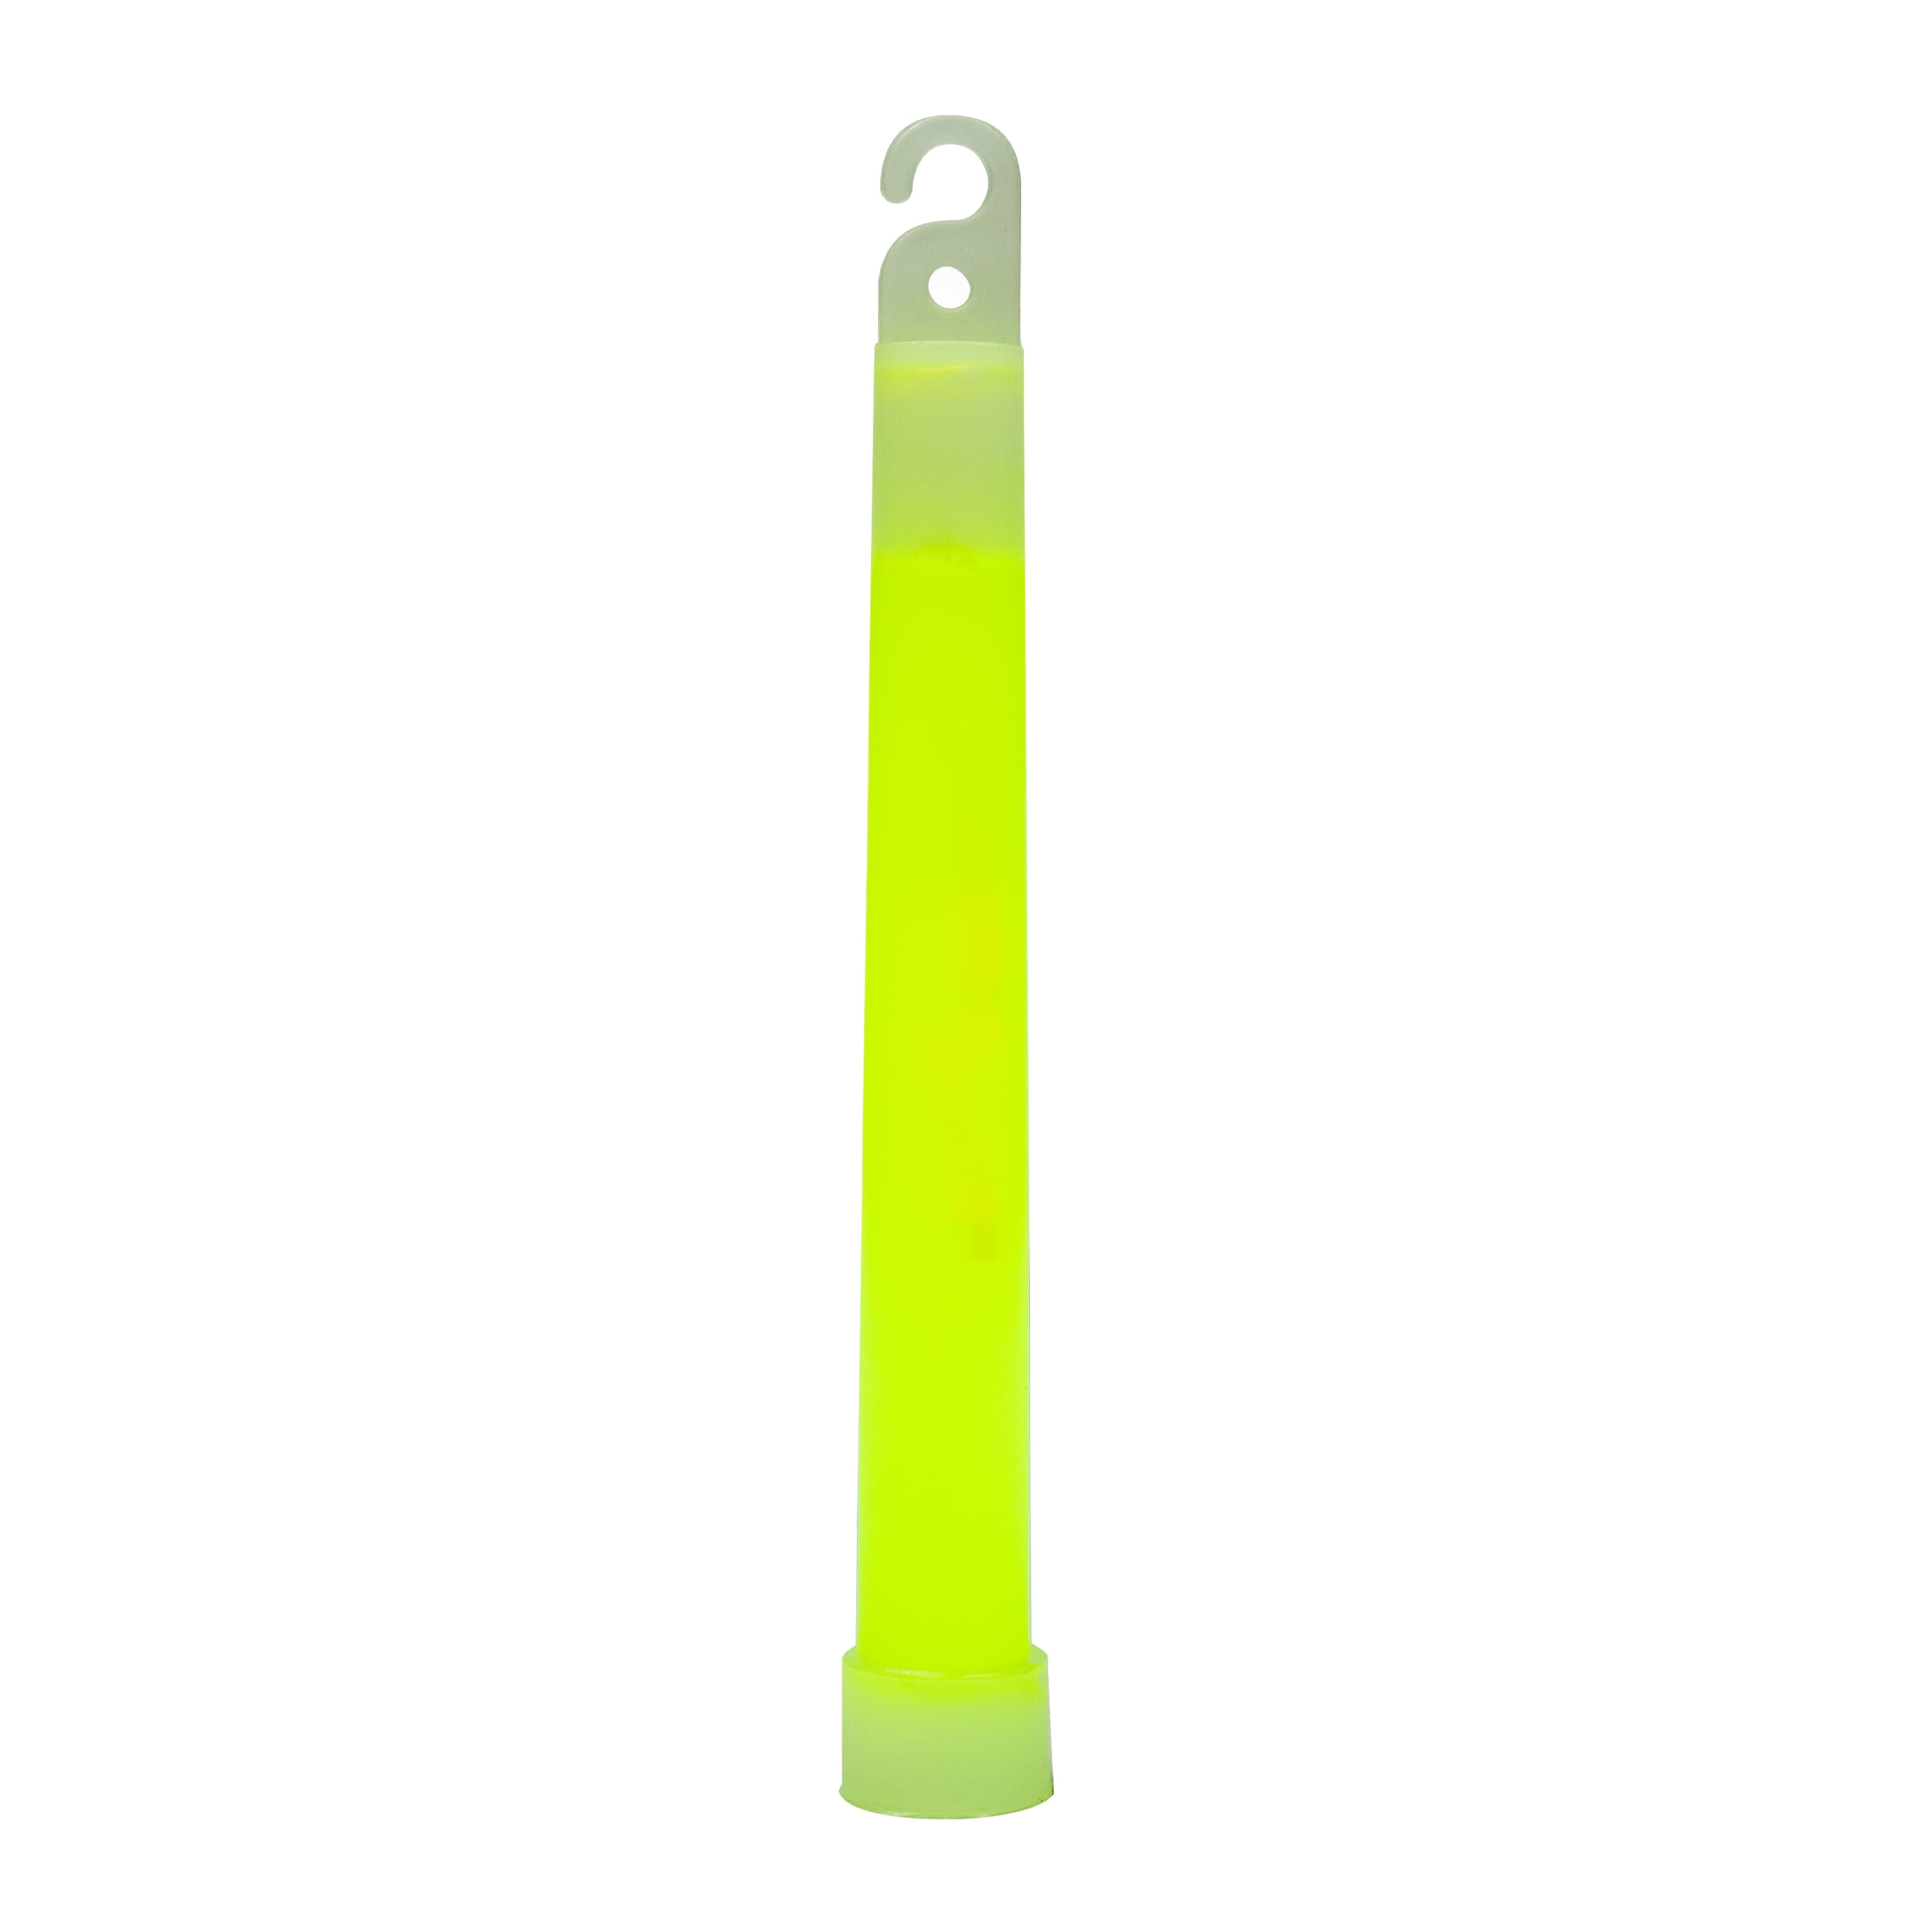 32 Ultra Bright 6 Inch Large Glow Sticks Glow Chem Light Sticks with 12 Hour 